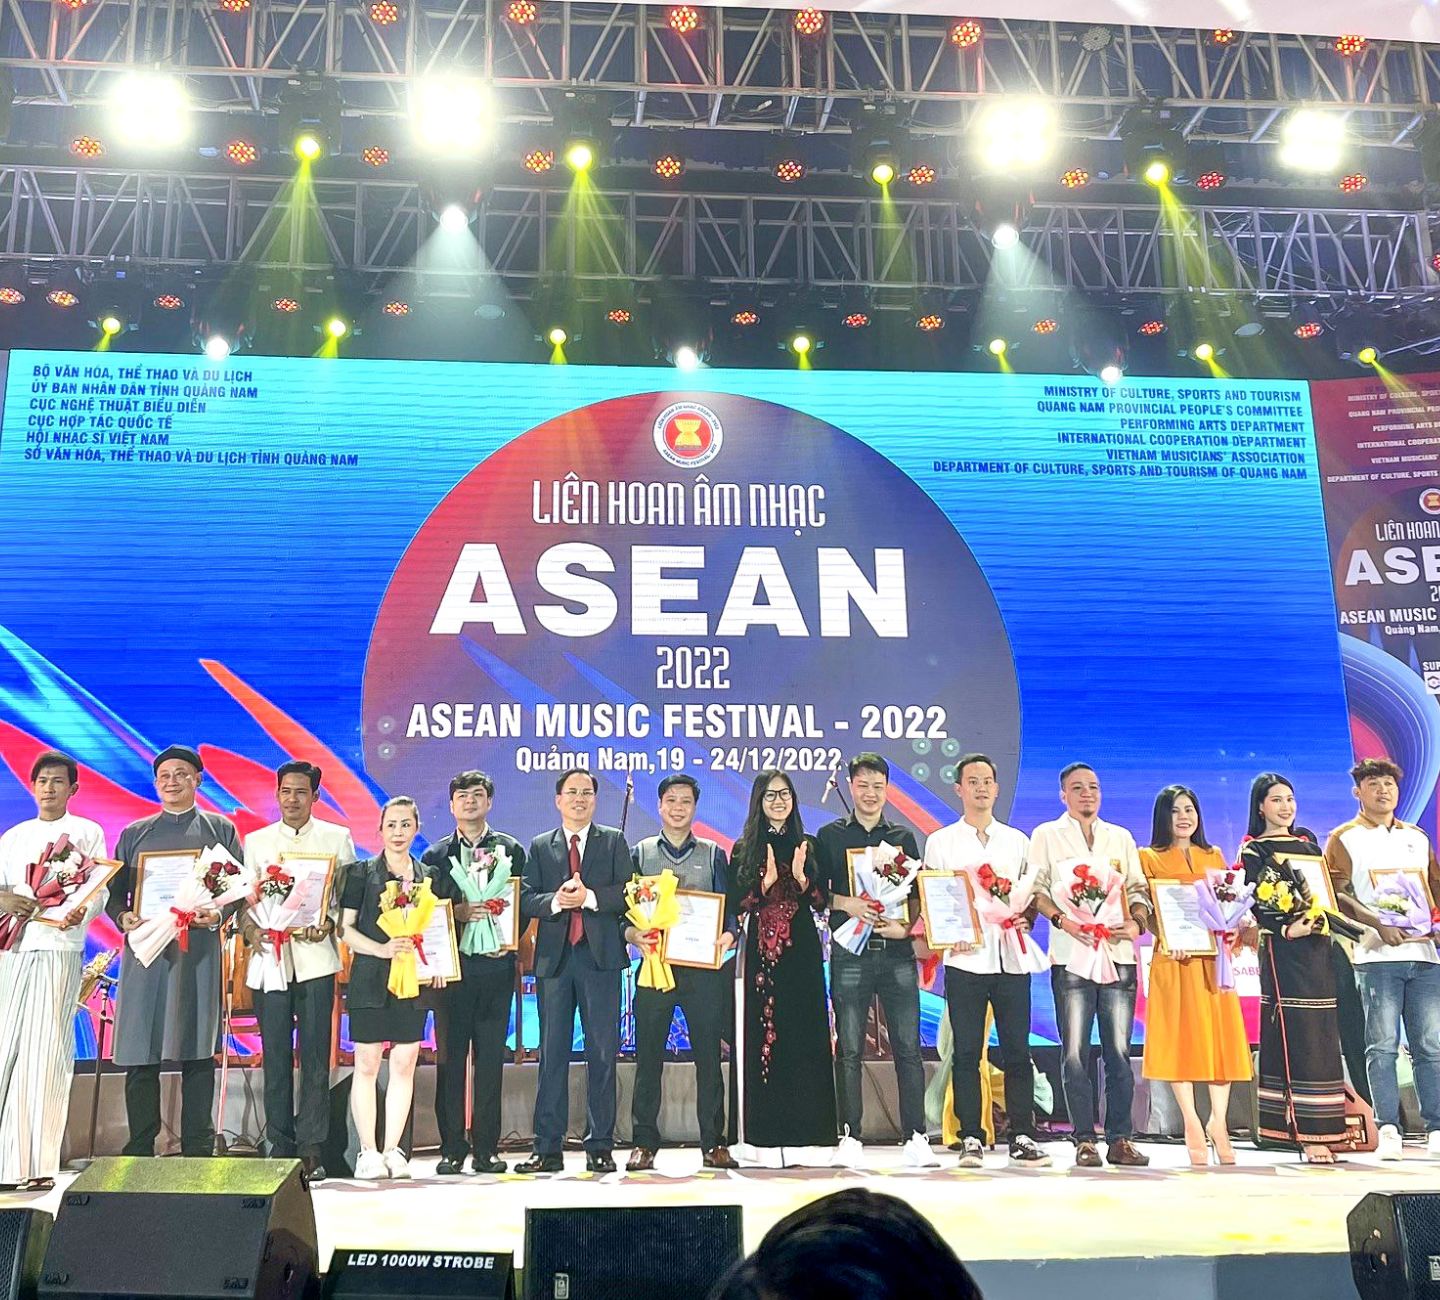 Bế mạc Liên hoan Âm nhạc ASEAN 2022: Đoàn kết, sáng tạo, cùng nhau lan tỏa bản sắc ASEAN